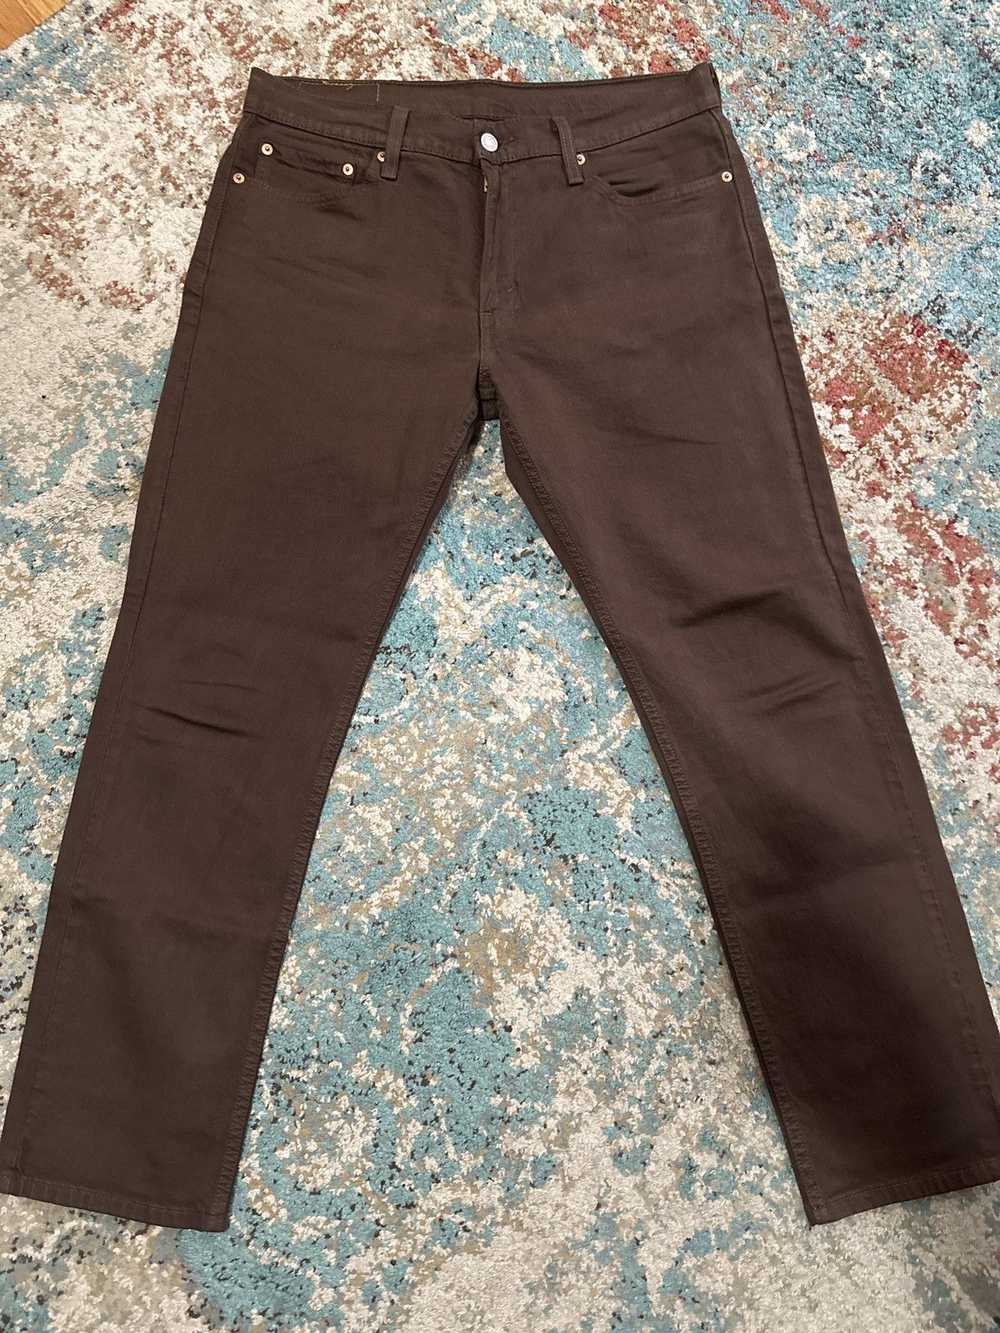 Levi's 511 Slim Fit Men’s Jeans - image 3